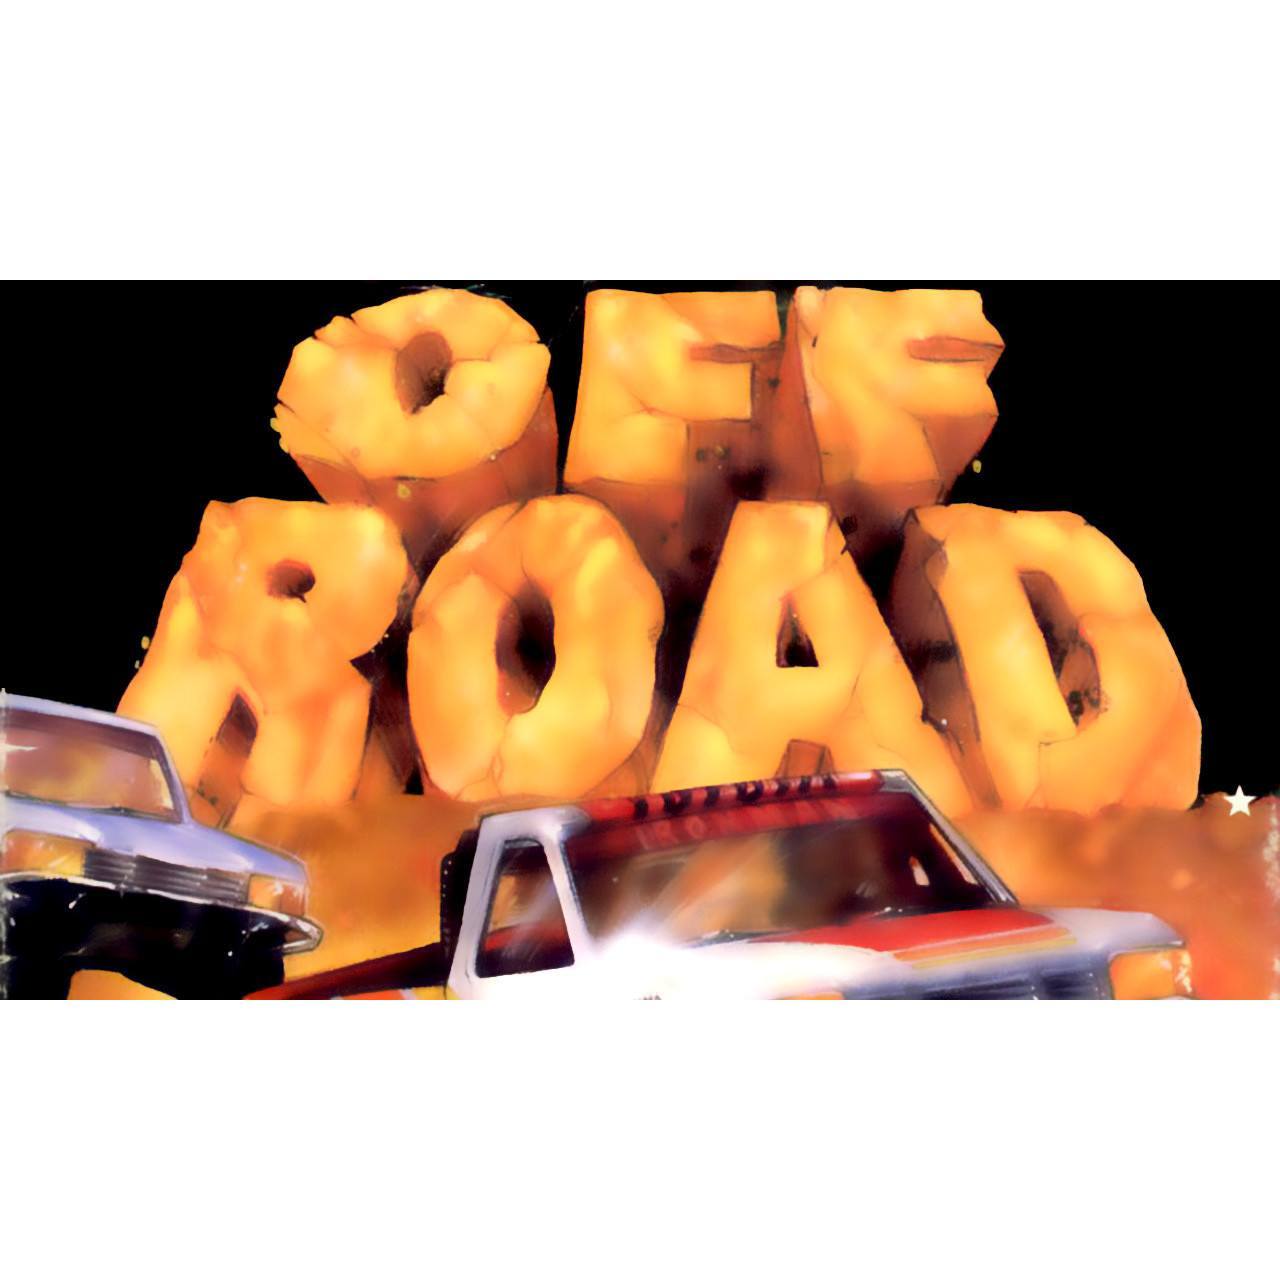 Super Off Road 3 NES Nintendo Game